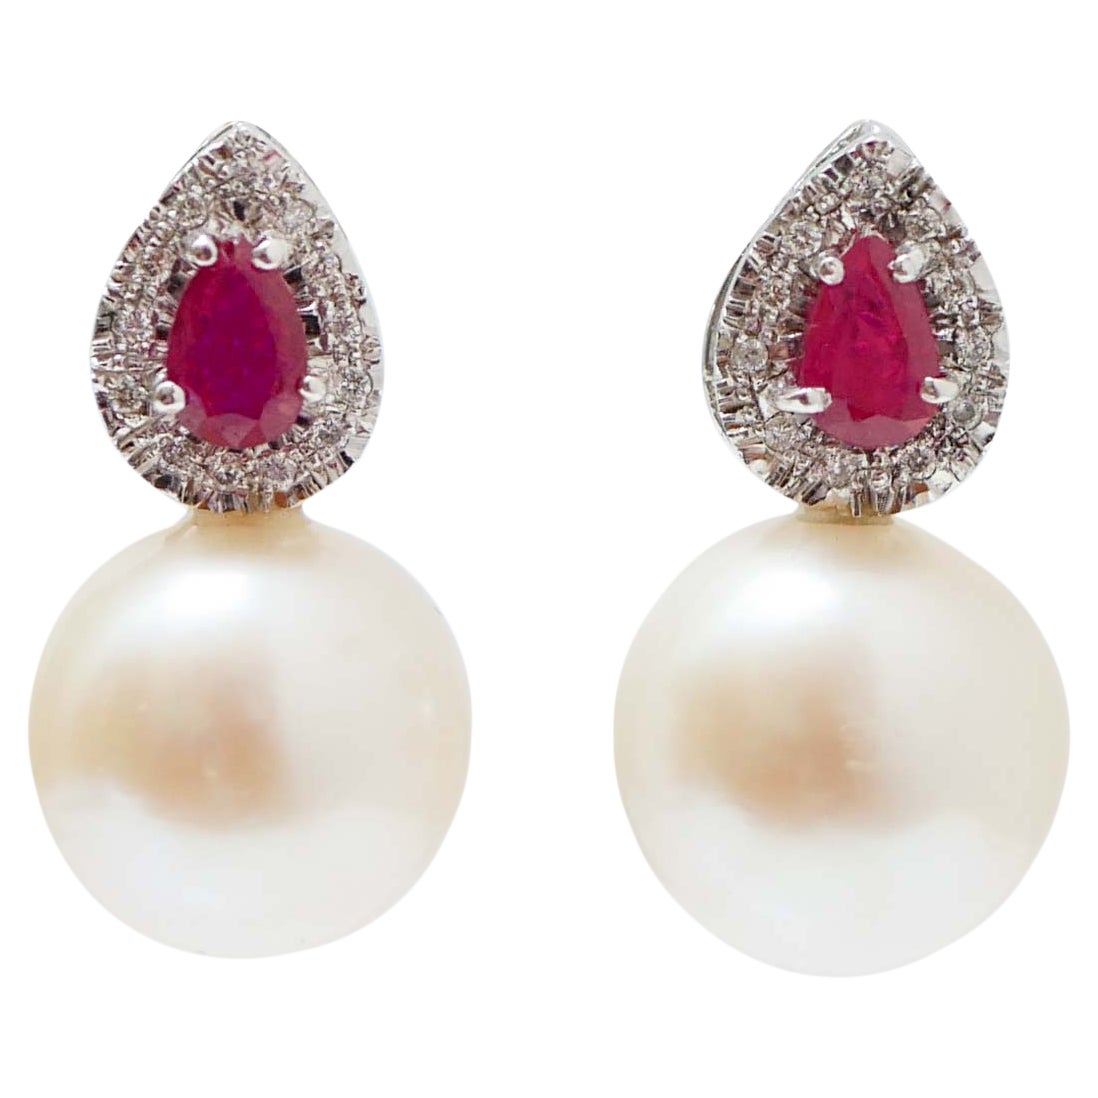 Ohrringe aus Platin mit weißen Perlen, Rubinen, Diamanten und Platin.